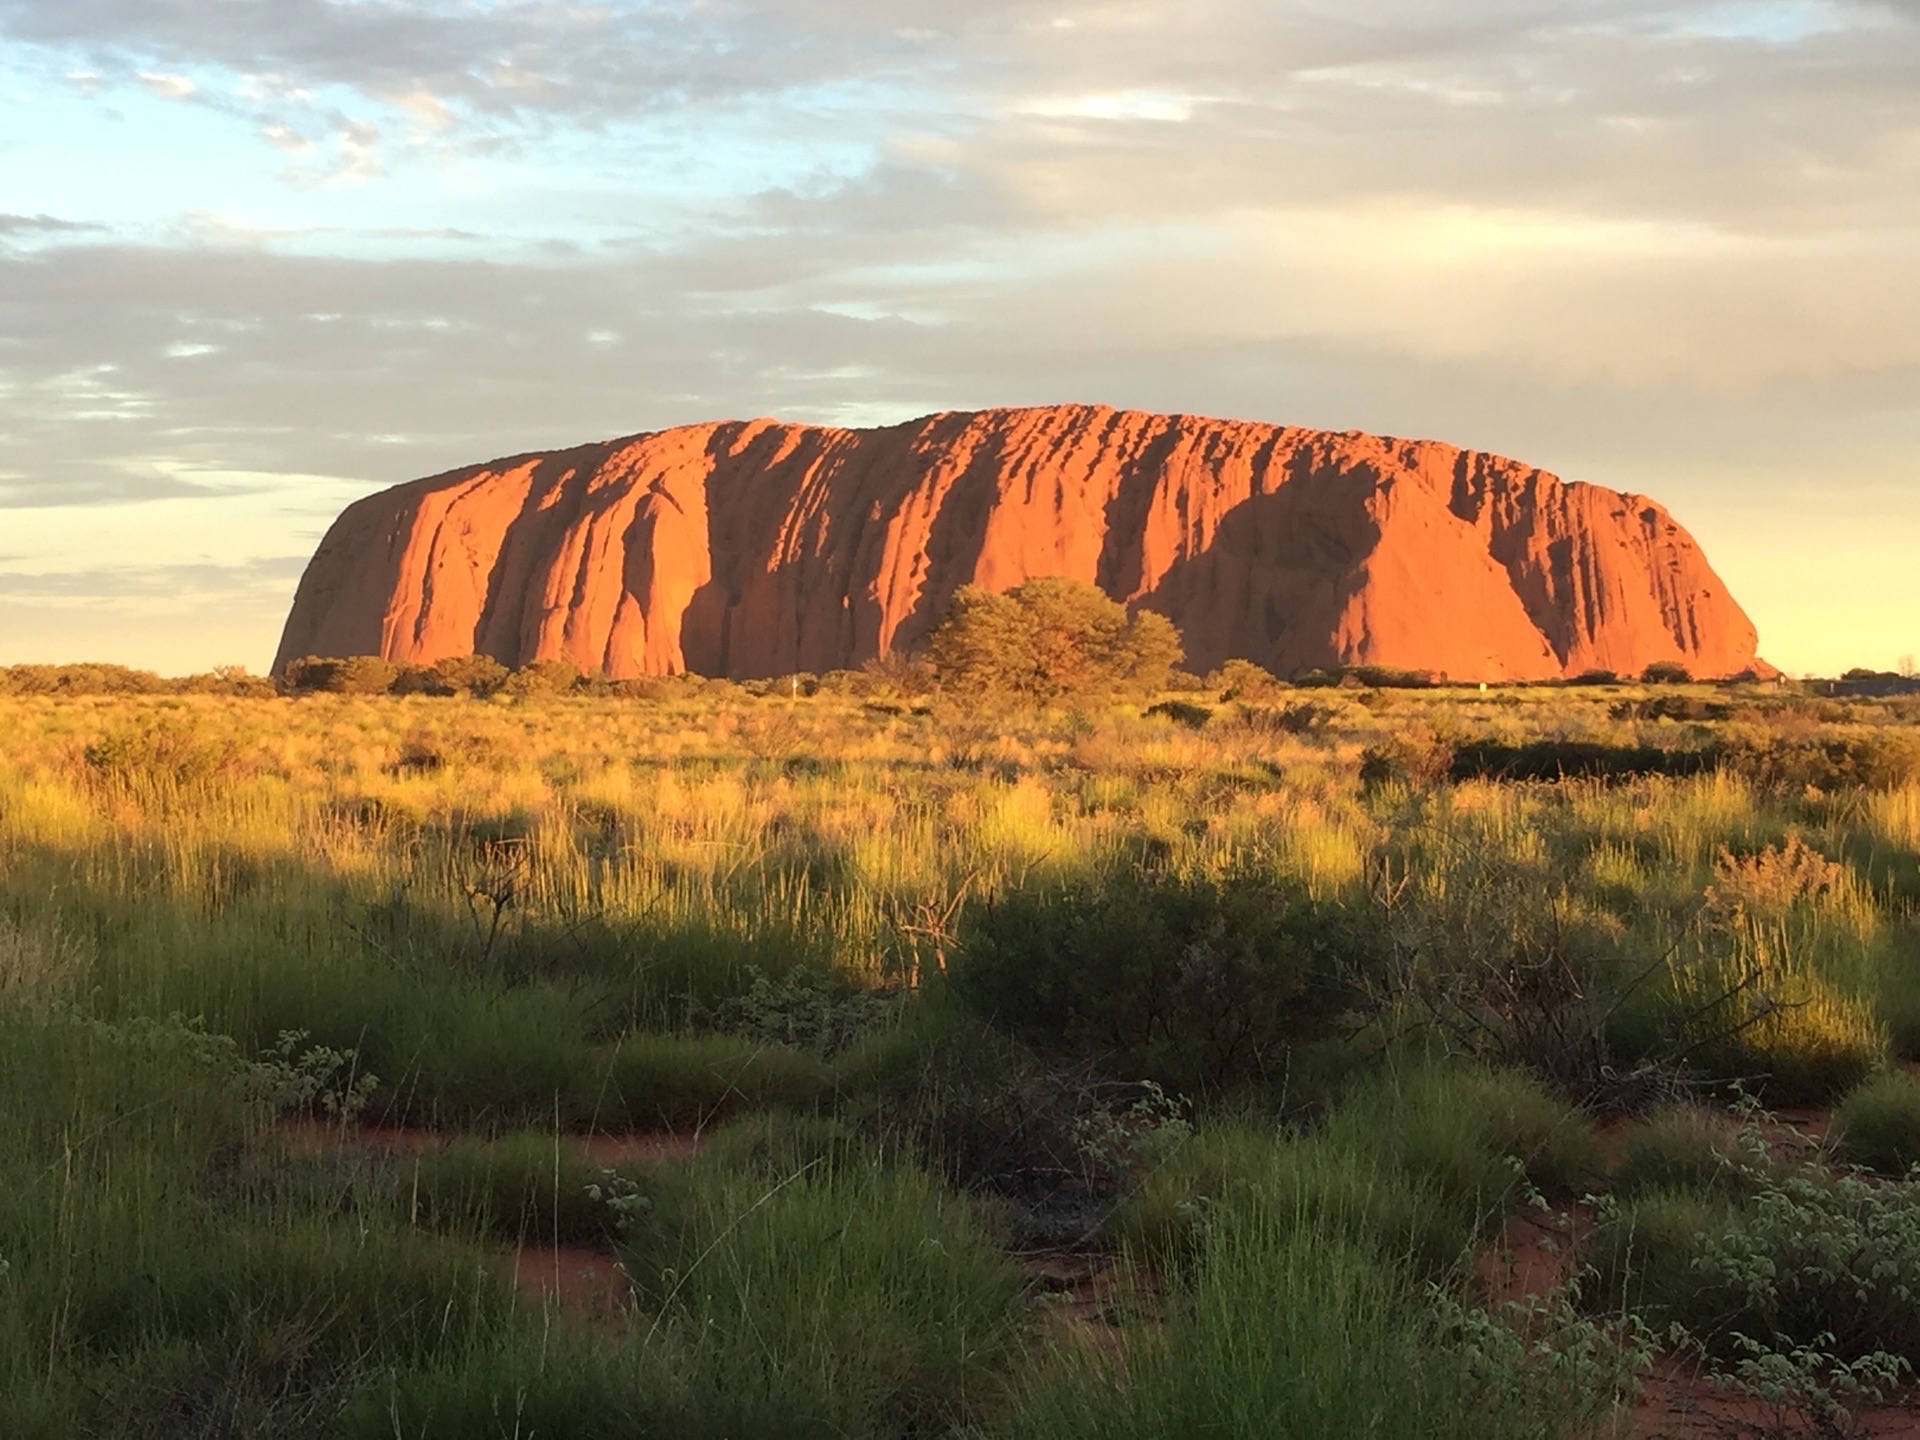 澳大利亚艾尔斯巨石 世界最大的巨石，乌鲁鲁人的神圣之地。乌鲁汝是澳大利亚最知名的自然地标之一。其沙岩